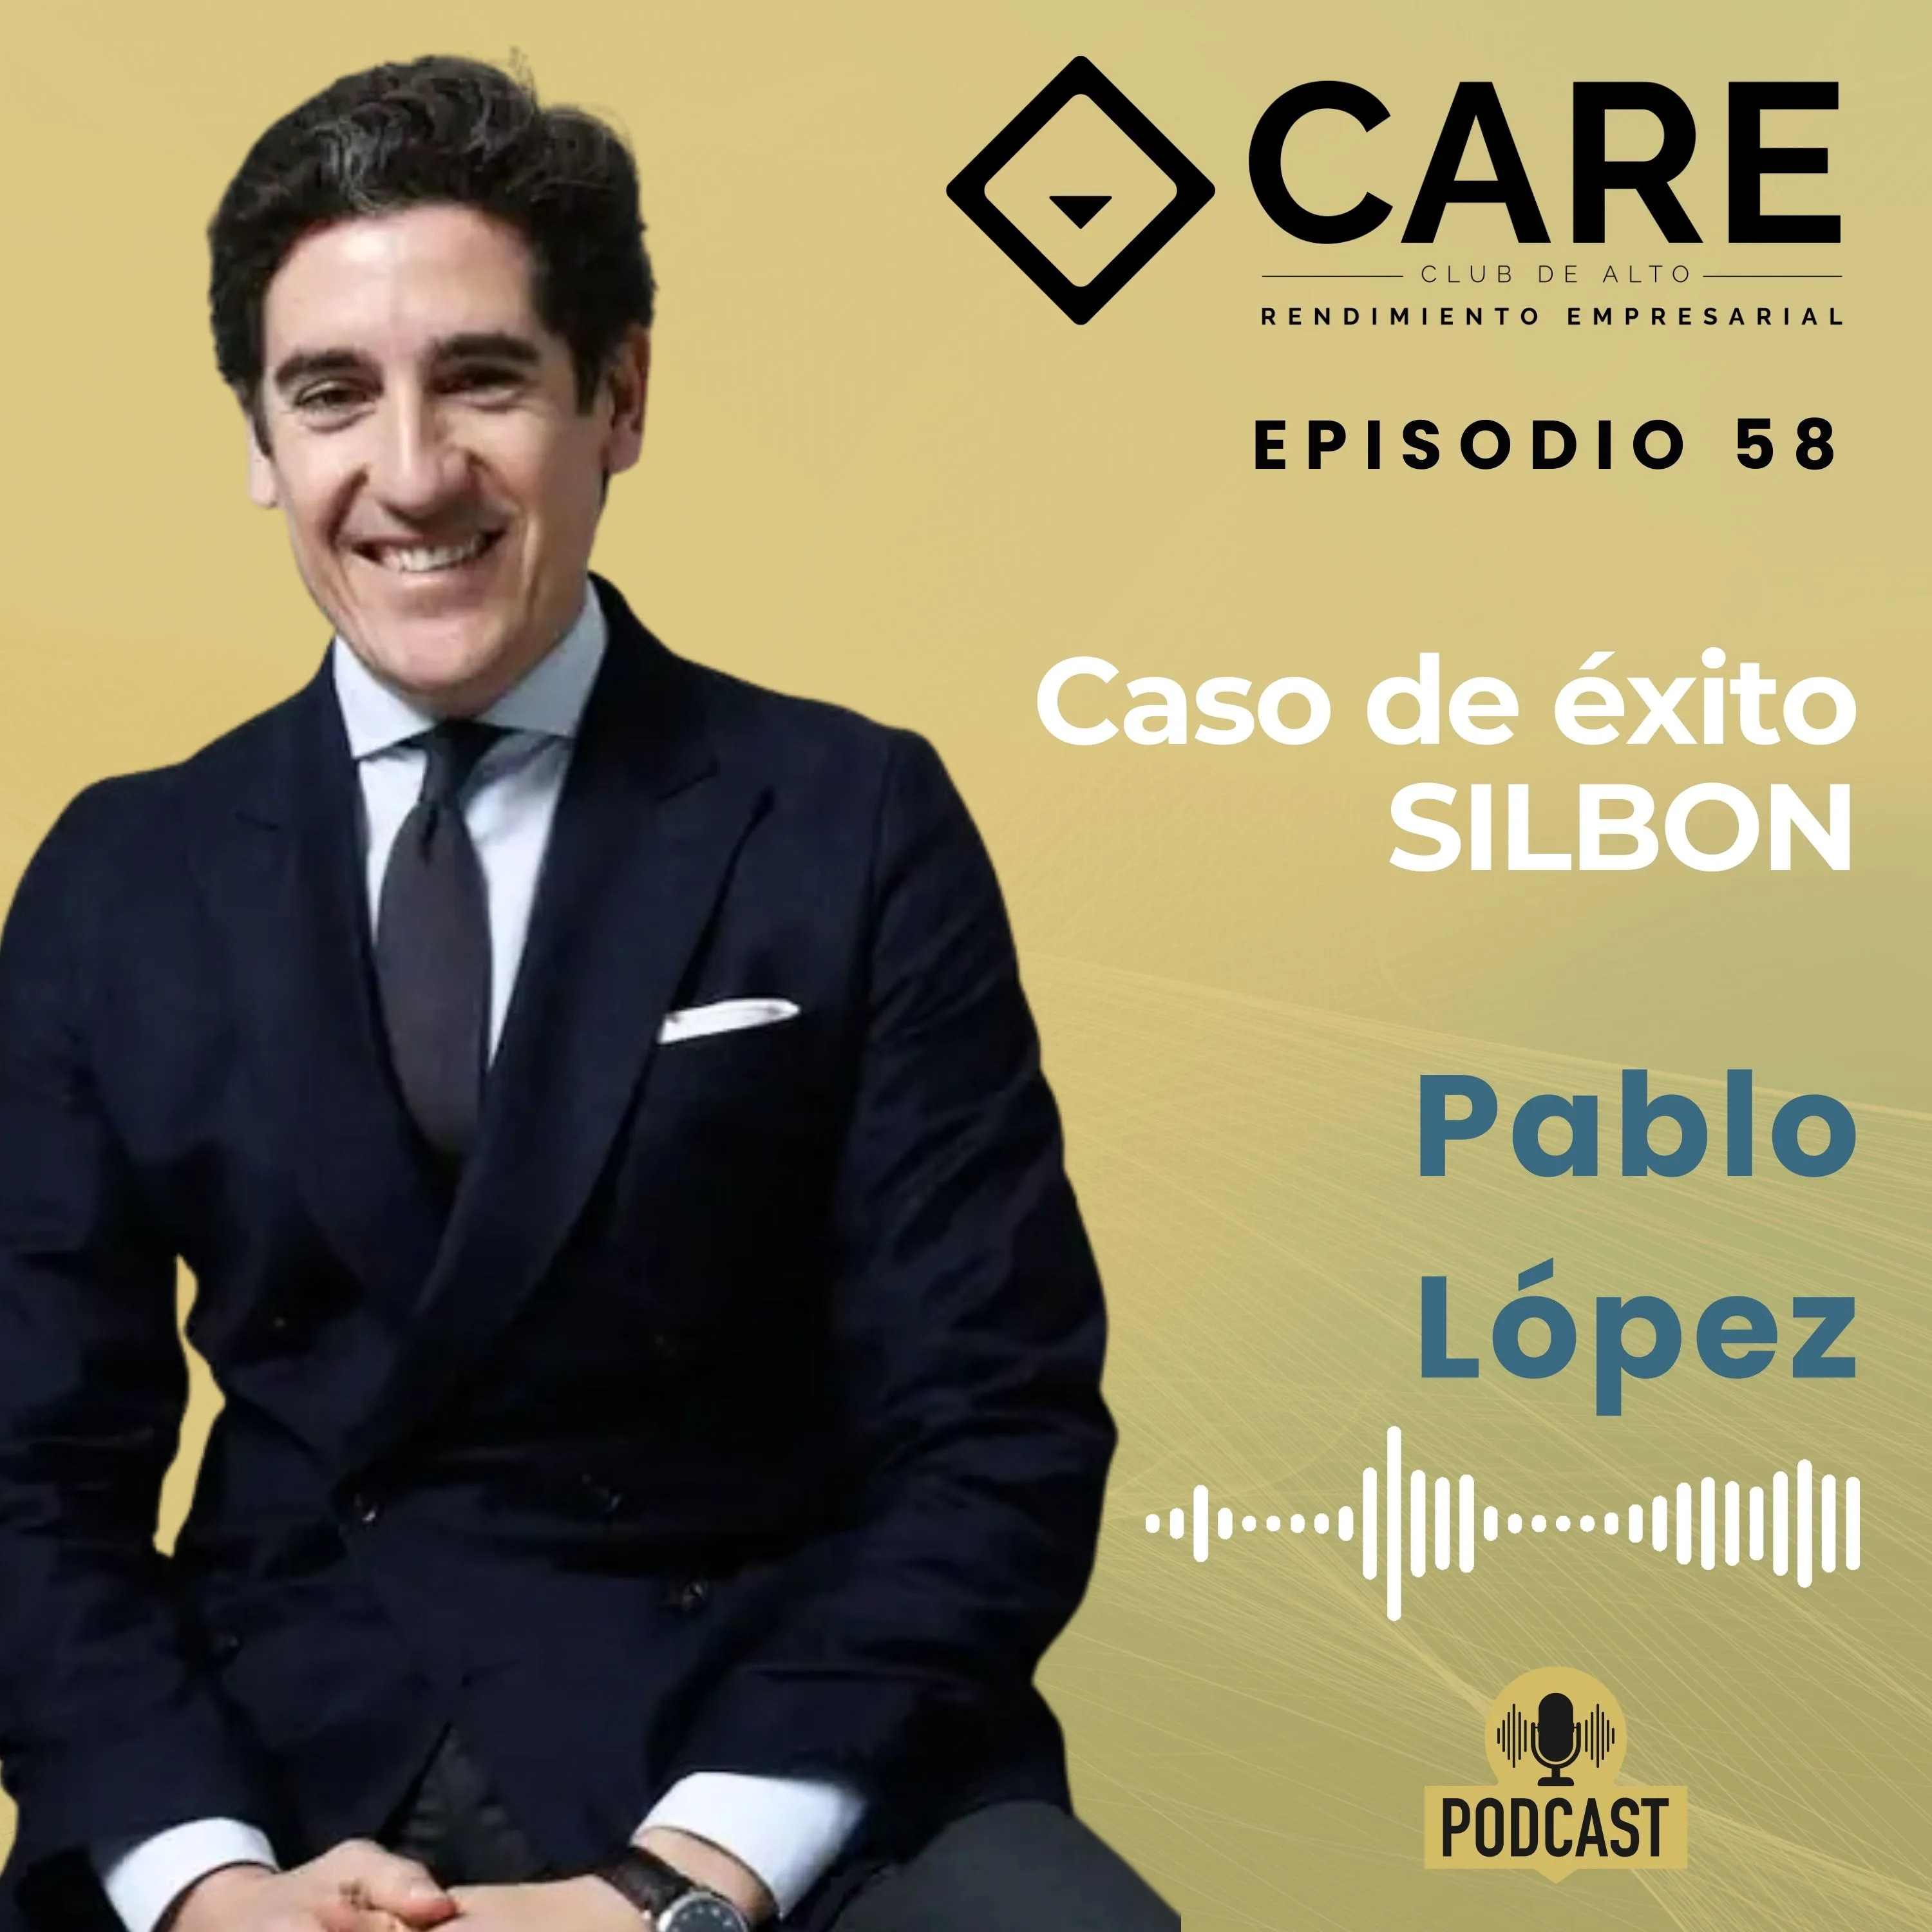 Episodio 58 - Caso de éxito SILBON, con Pablo López - Club de Alto Rendimiento Empresarial